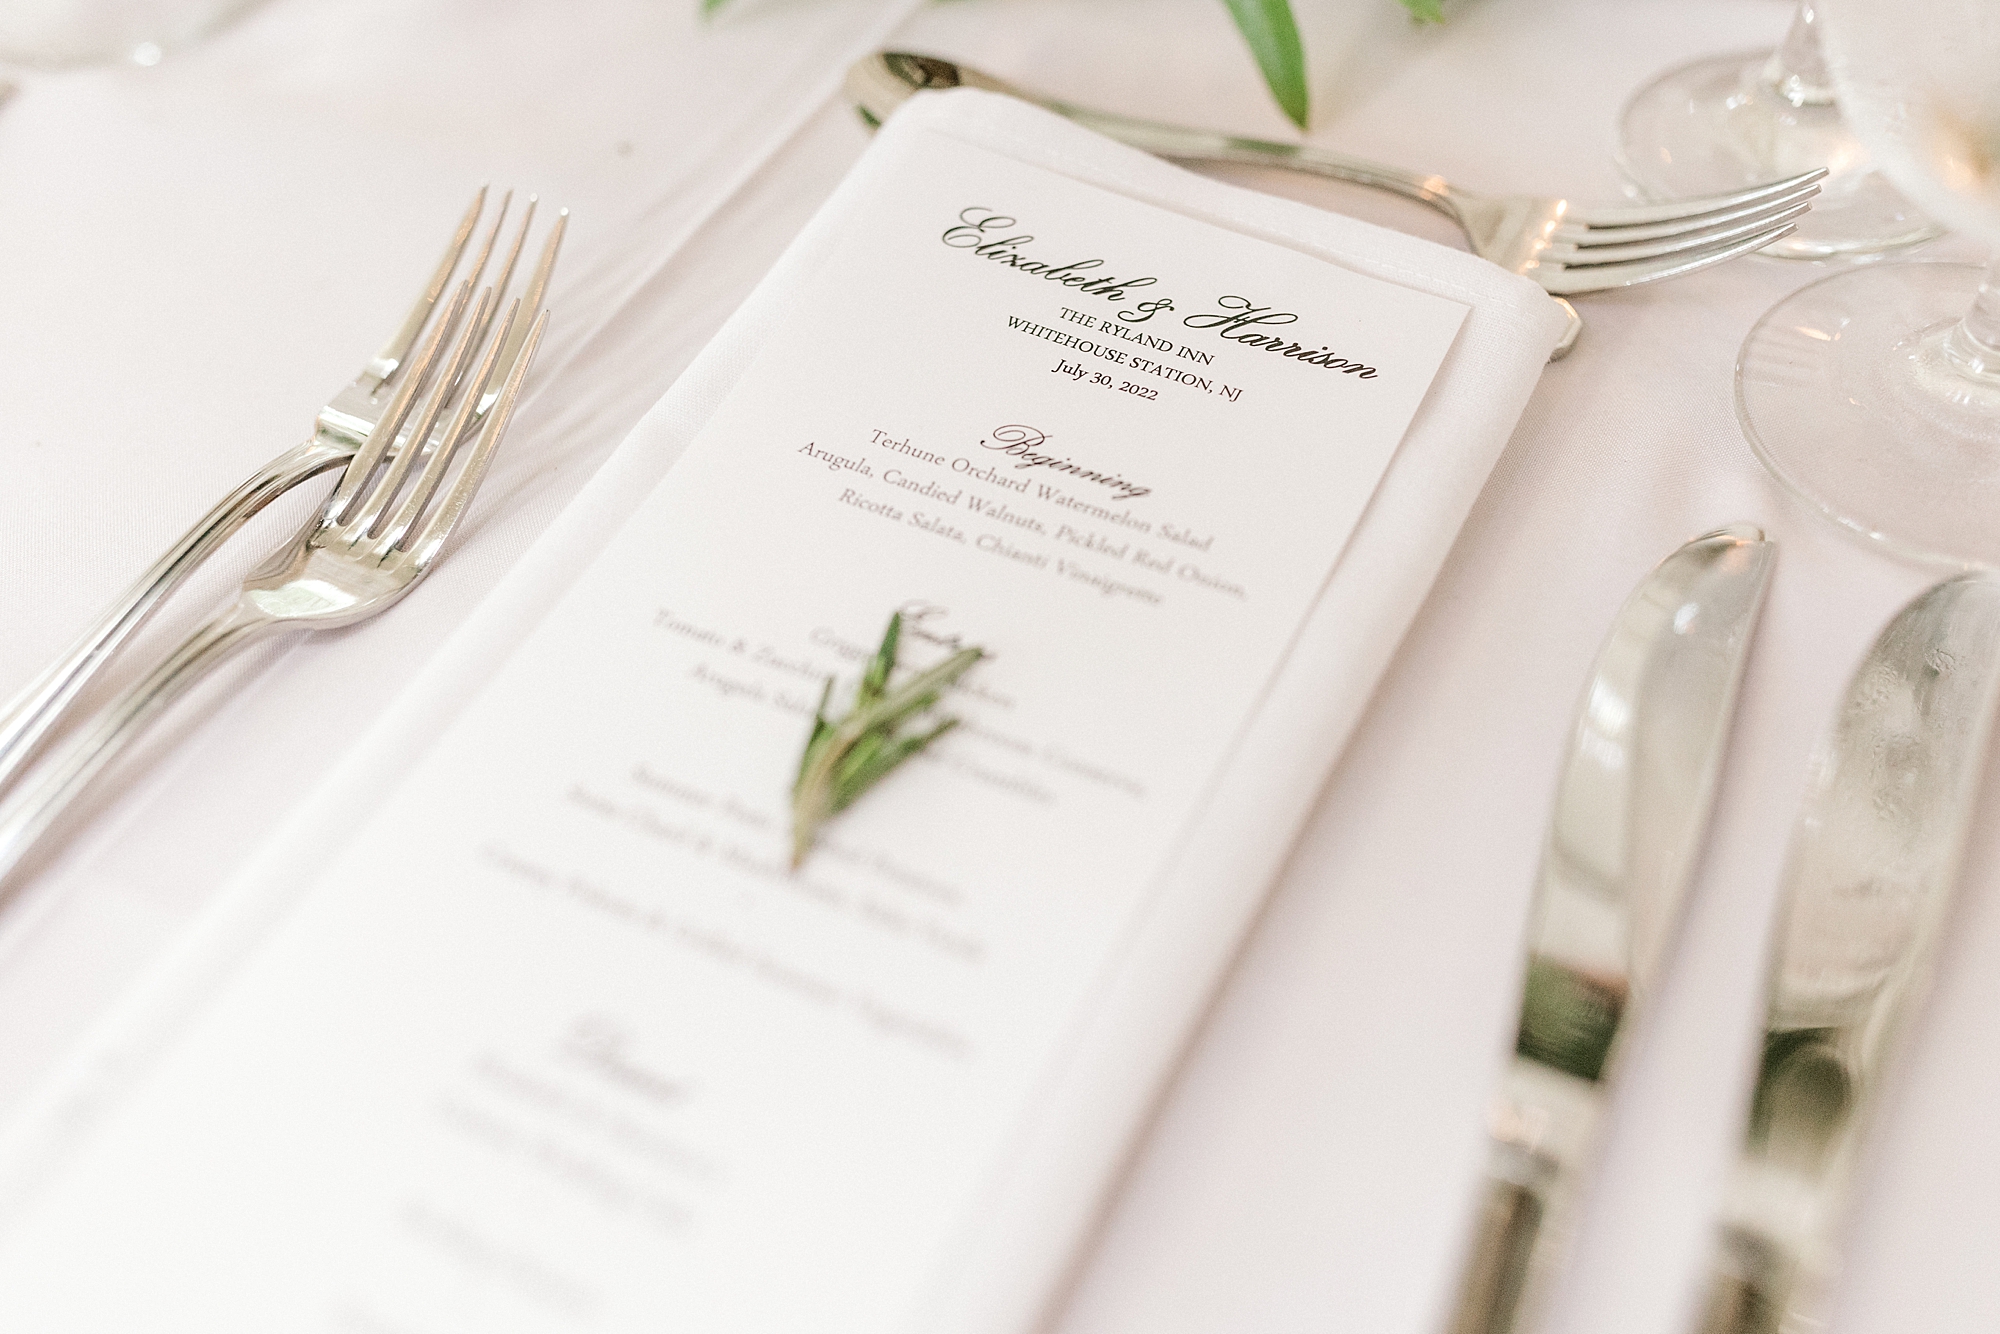 menu card for wedding reception with green sprig